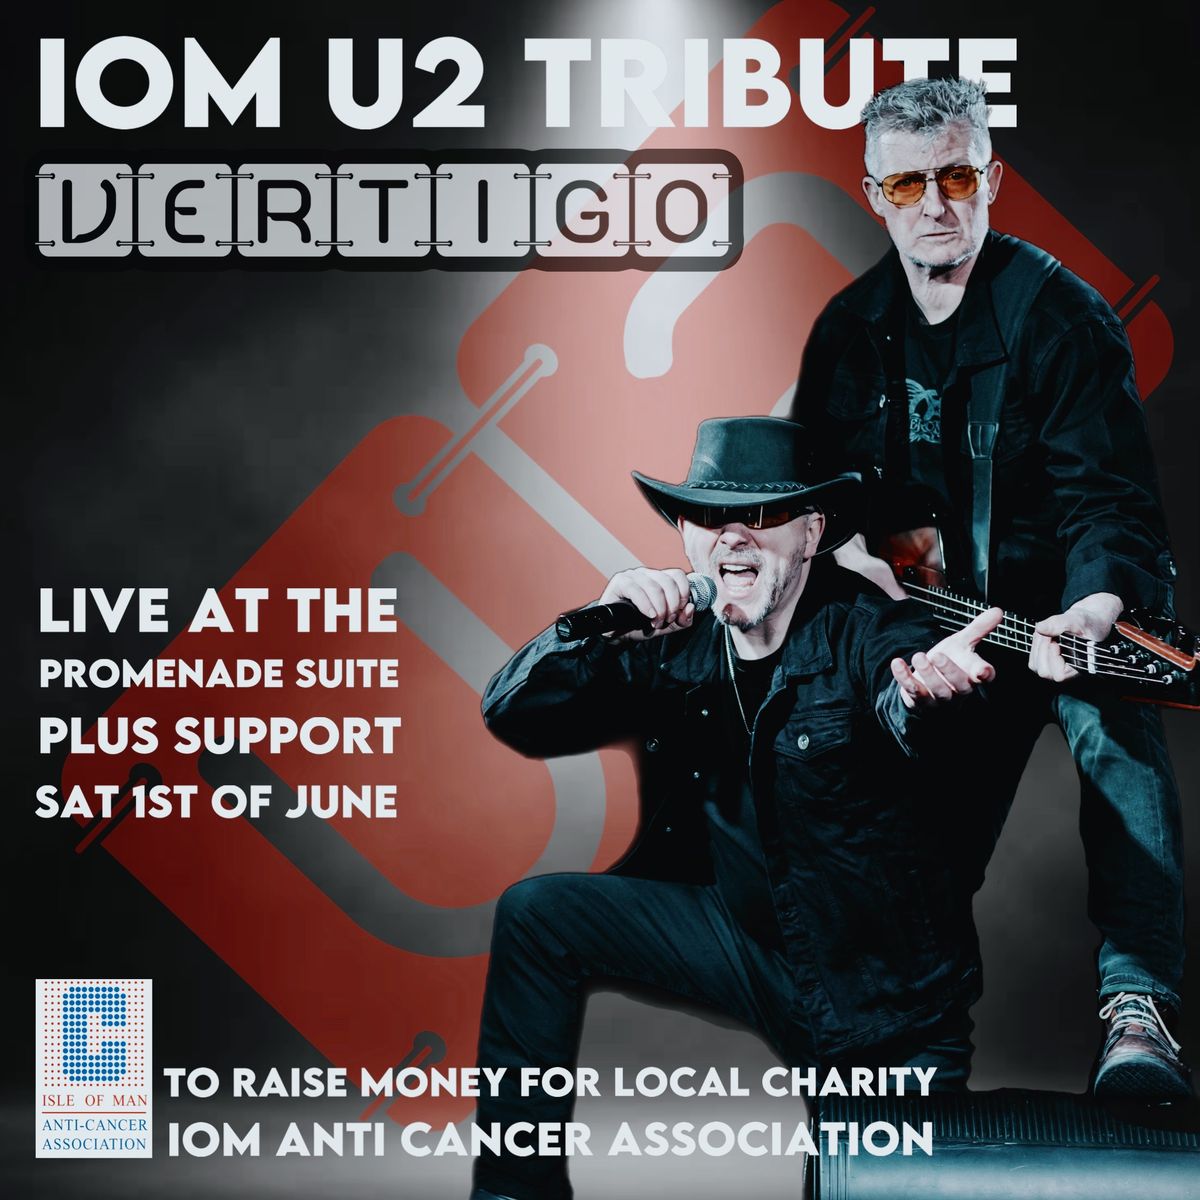 IOM U2 Tribute Vertigo Live! To raise money for local charity IOM Anti Cancer Association. 